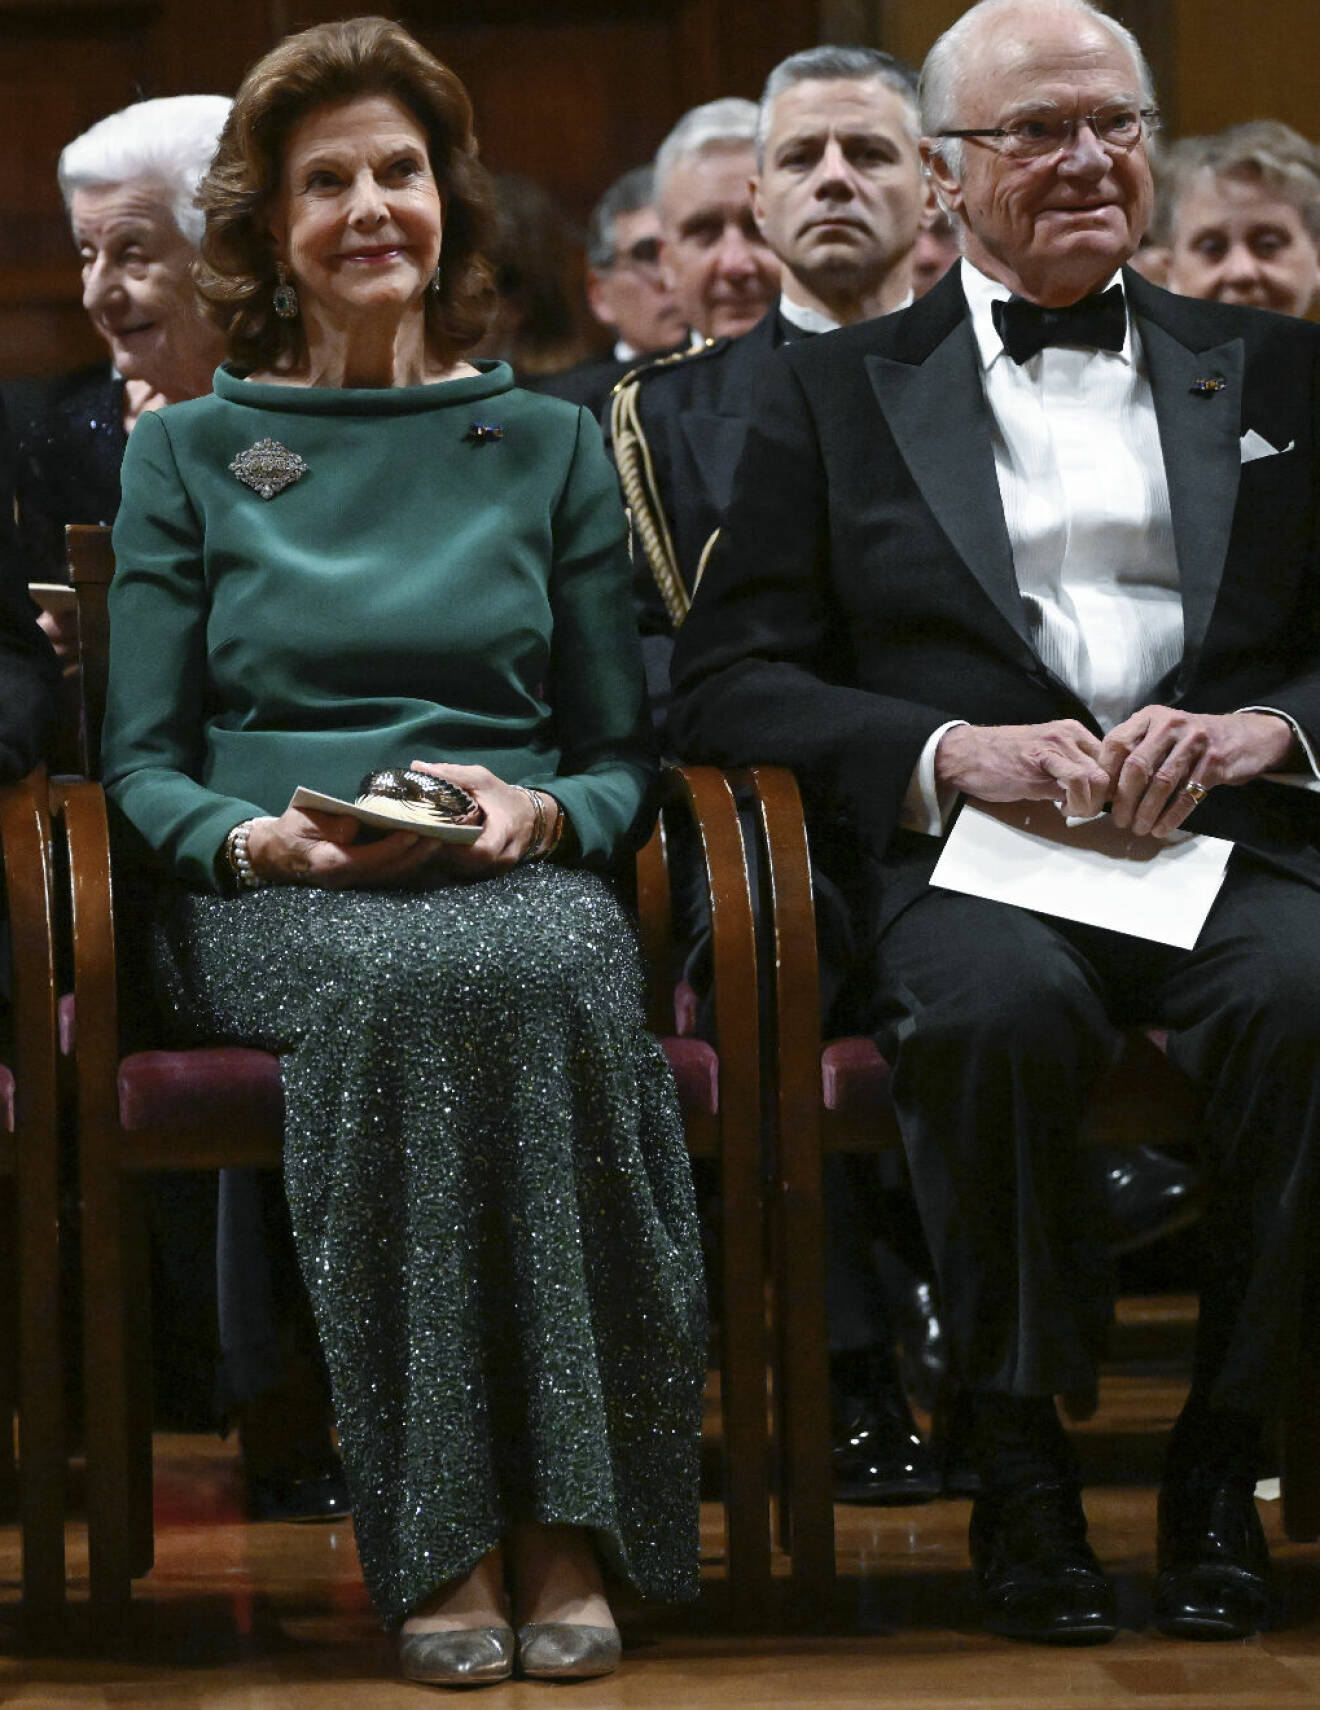 Drottning Silvia i grön paljettkjol, kungen i smoking